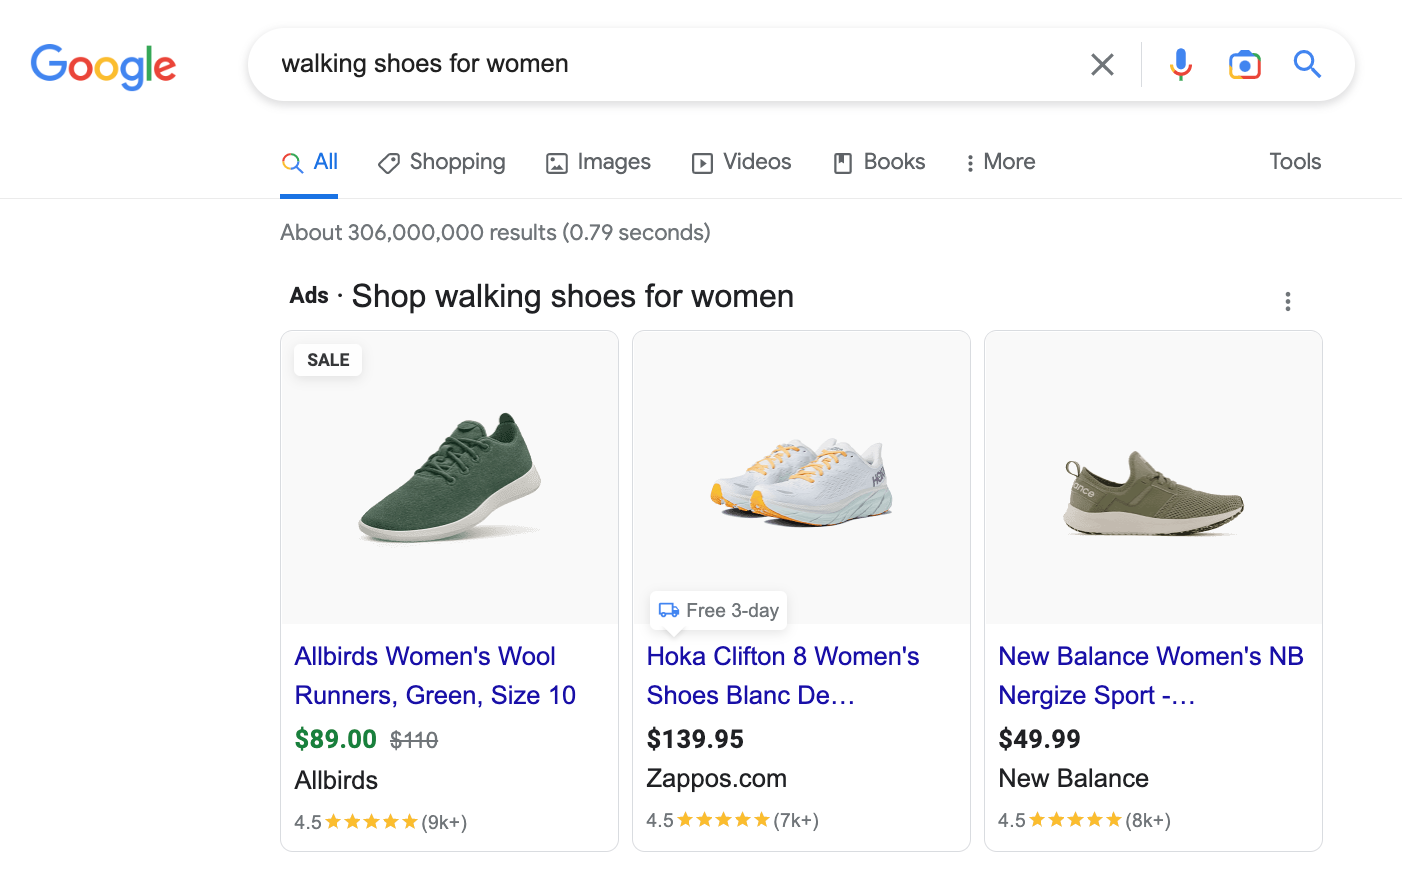 Скриншот для поискового запроса «обувь для ходьбы для женщин» в Google